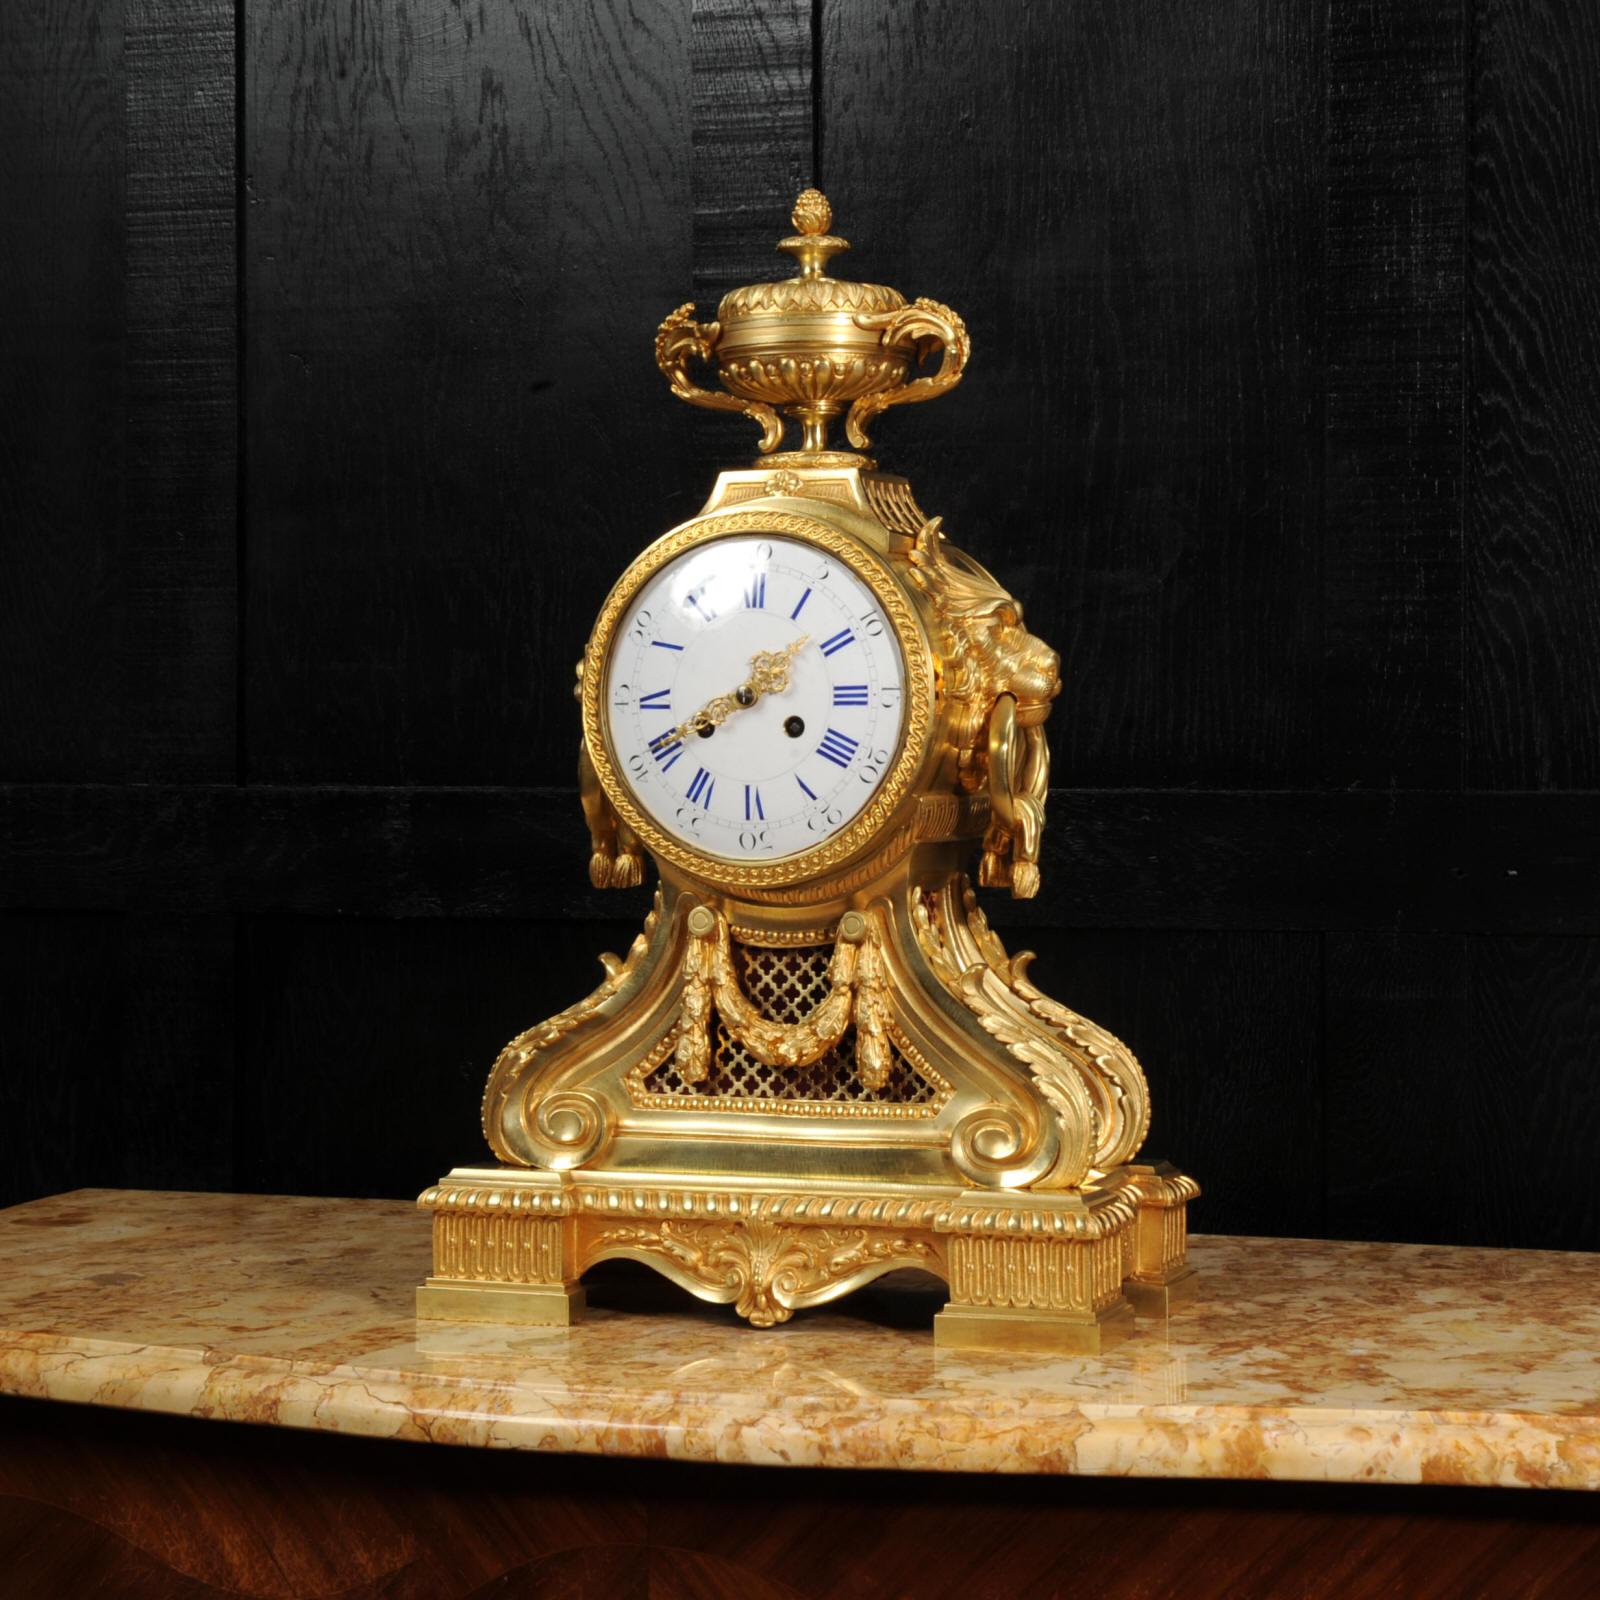 Une grande et étonnante horloge à tête de tambour d'origine française. Magnifiquement réalisée en bronze finement doré, elle est de conception néoclassique. Le mouvement est monté dans un grand tambour avec de superbes poignées en forme de masque de